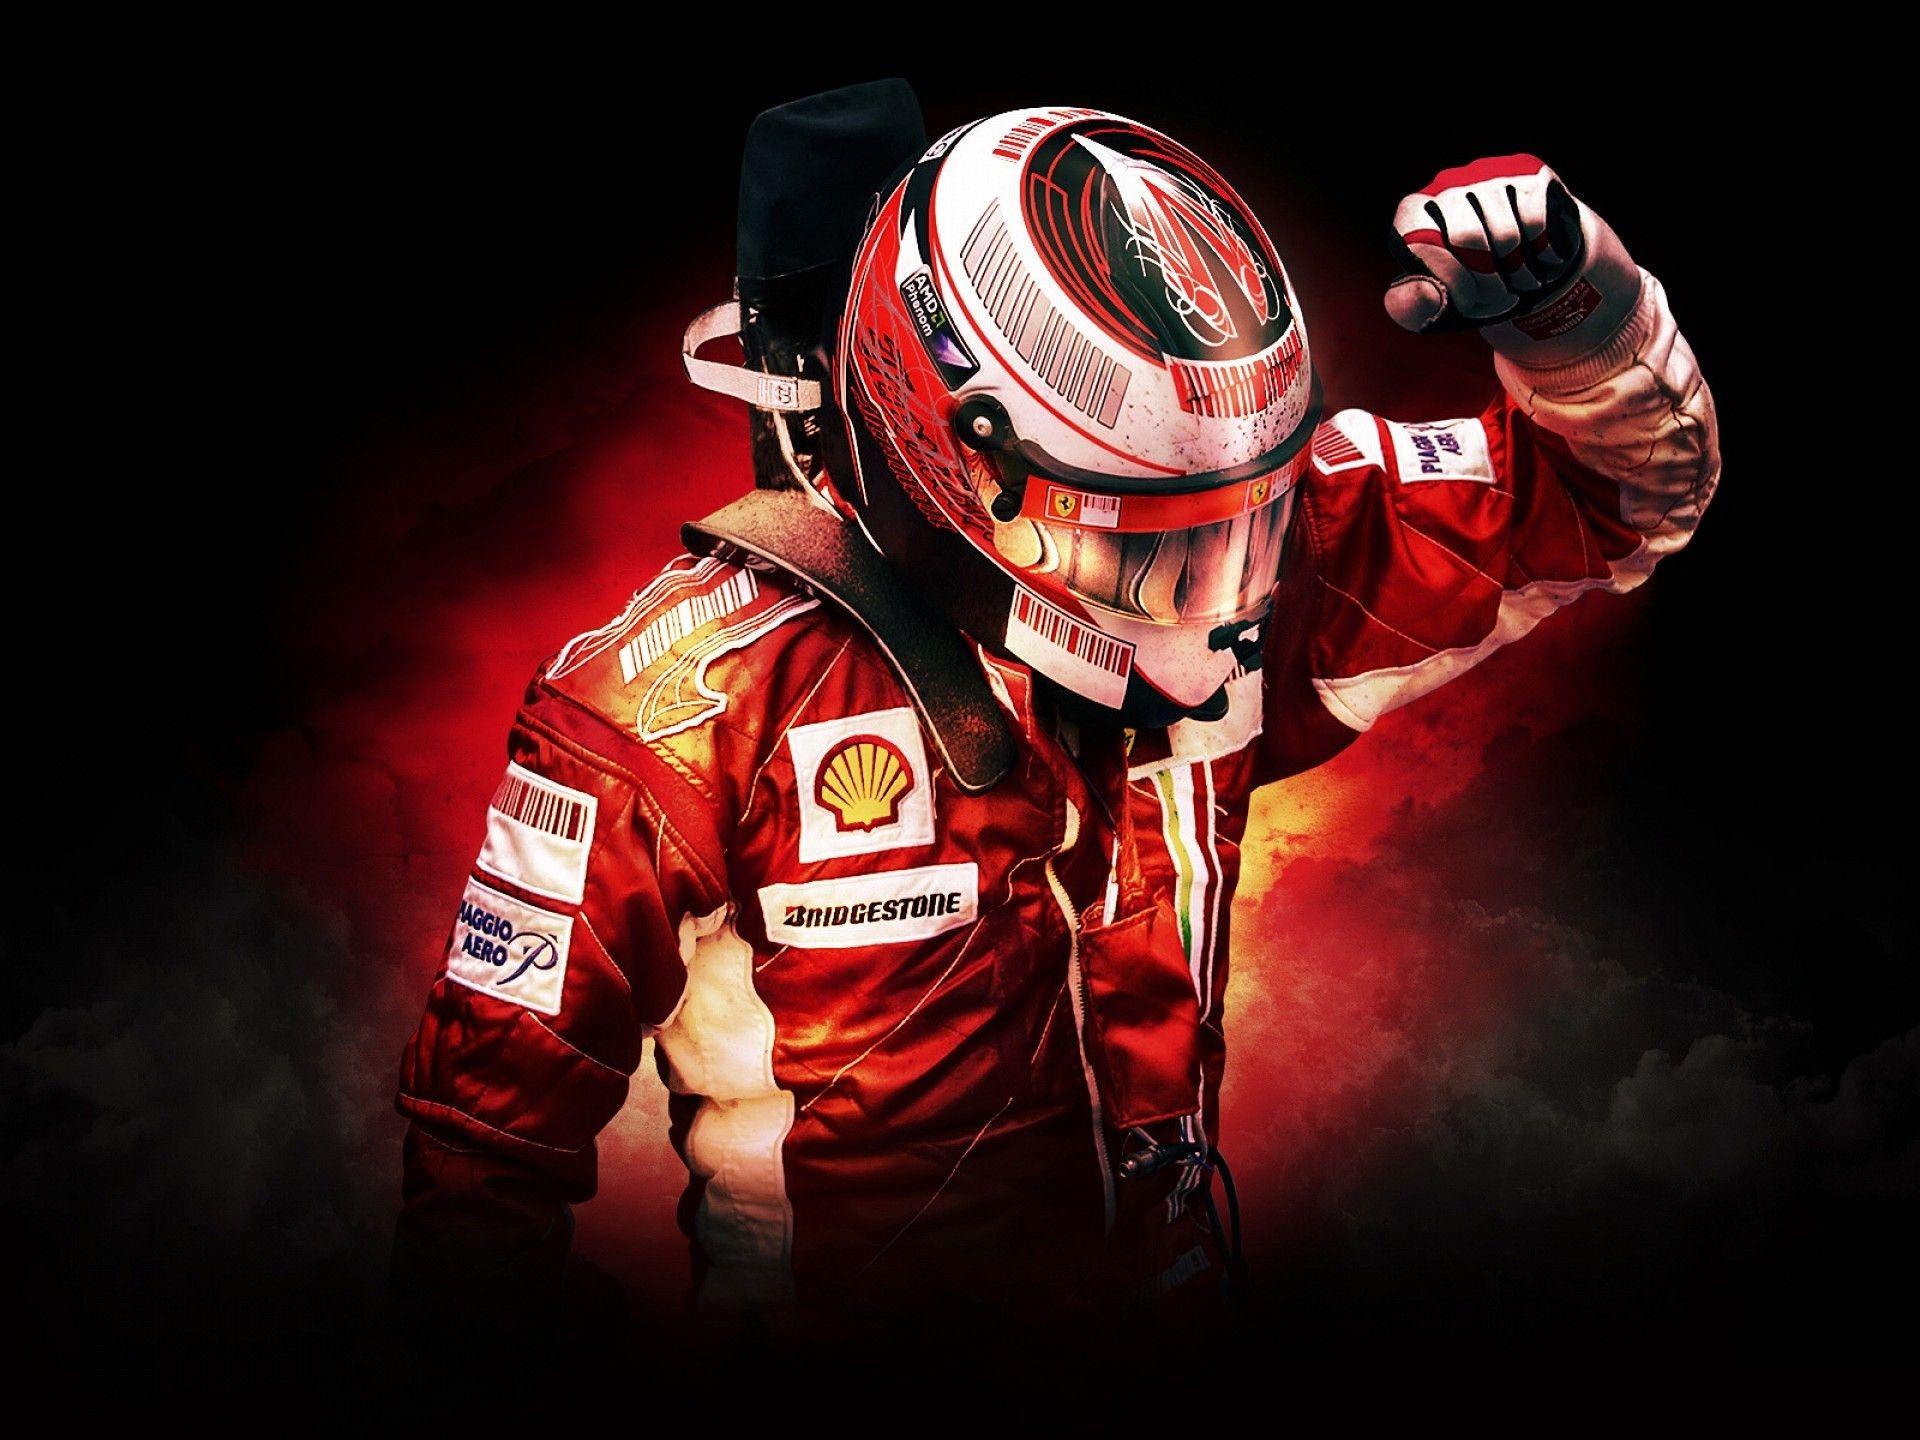 F1 Ferrari Formula One driver picture .com